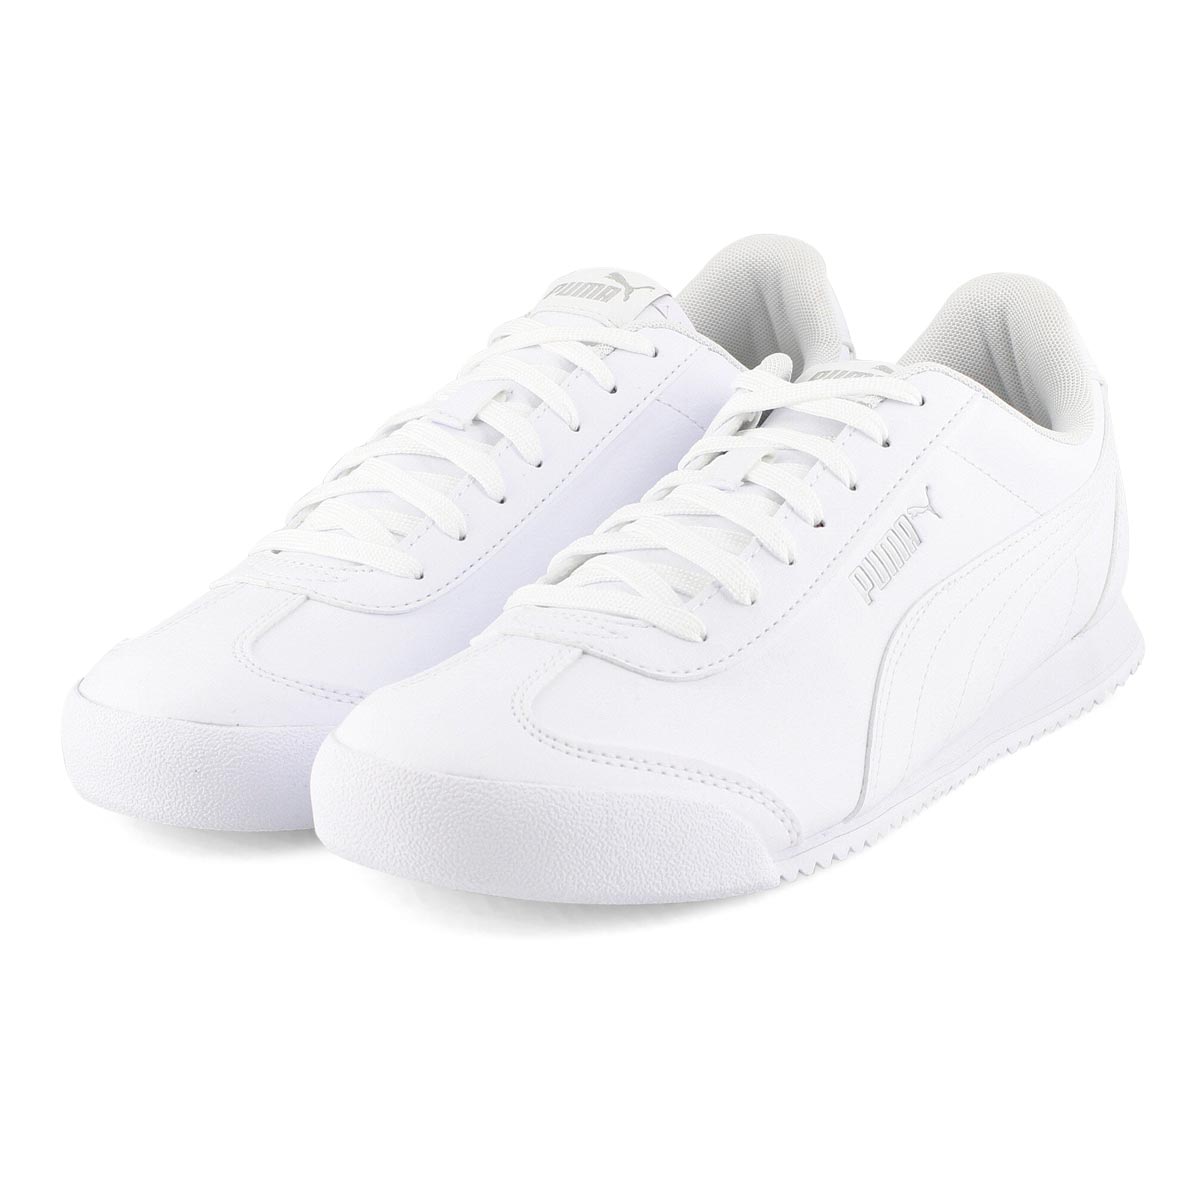 Puma Men's Turino FSL Sneaker - White/White | SoftMoc.com